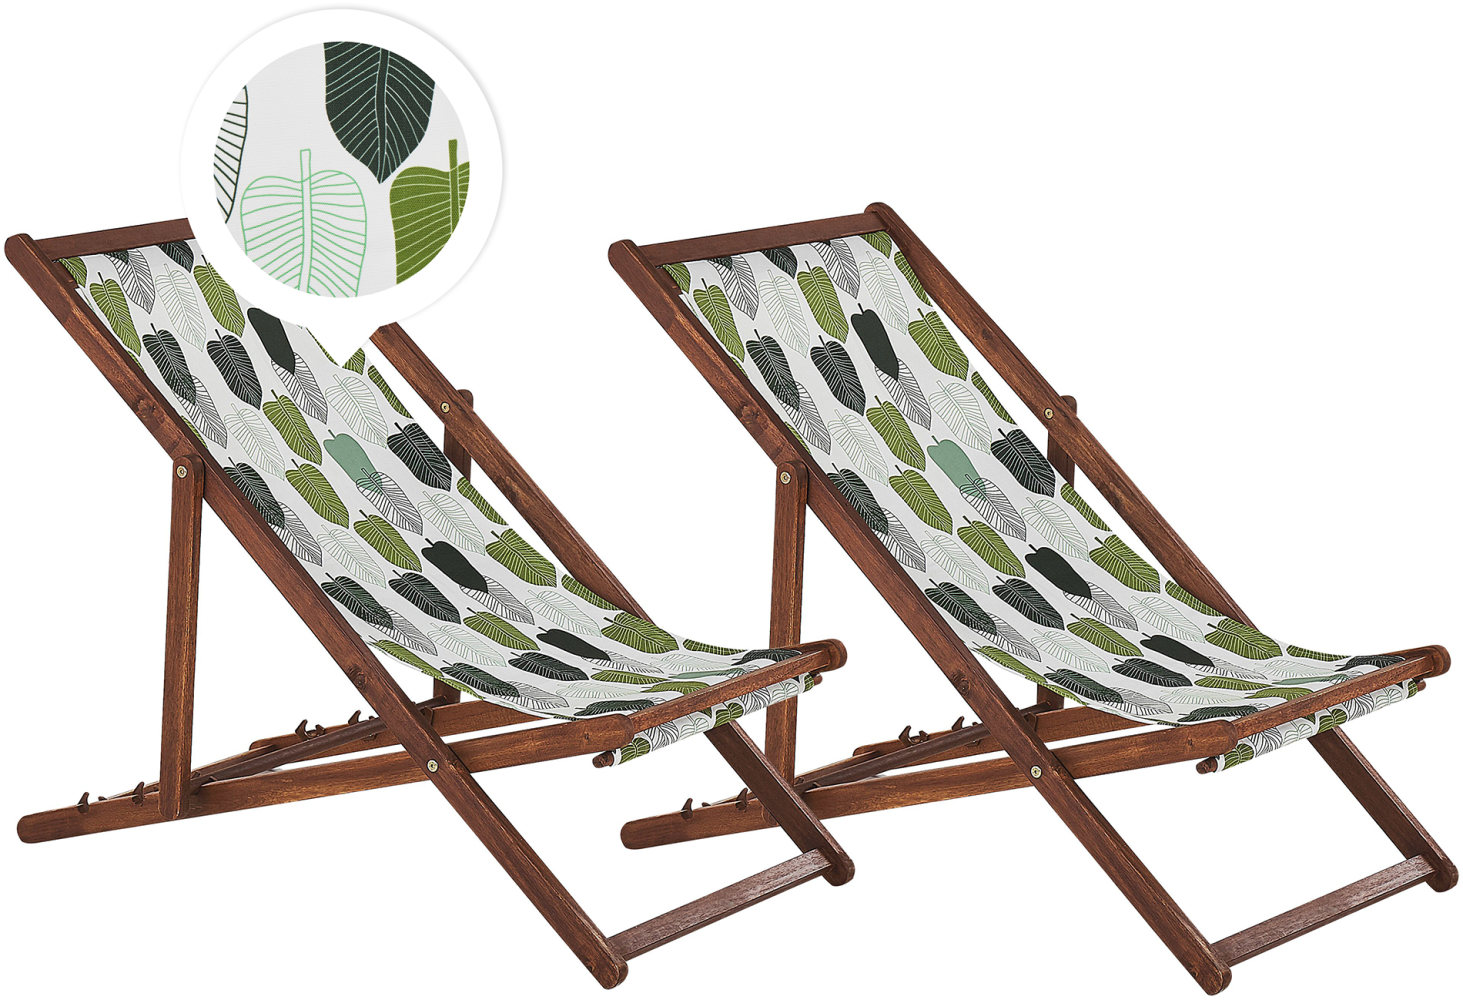 Liegestuhl Akazienholz dunkelbraun Textil grün weiß Blättermotiv 2er Set ANZIO Bild 1